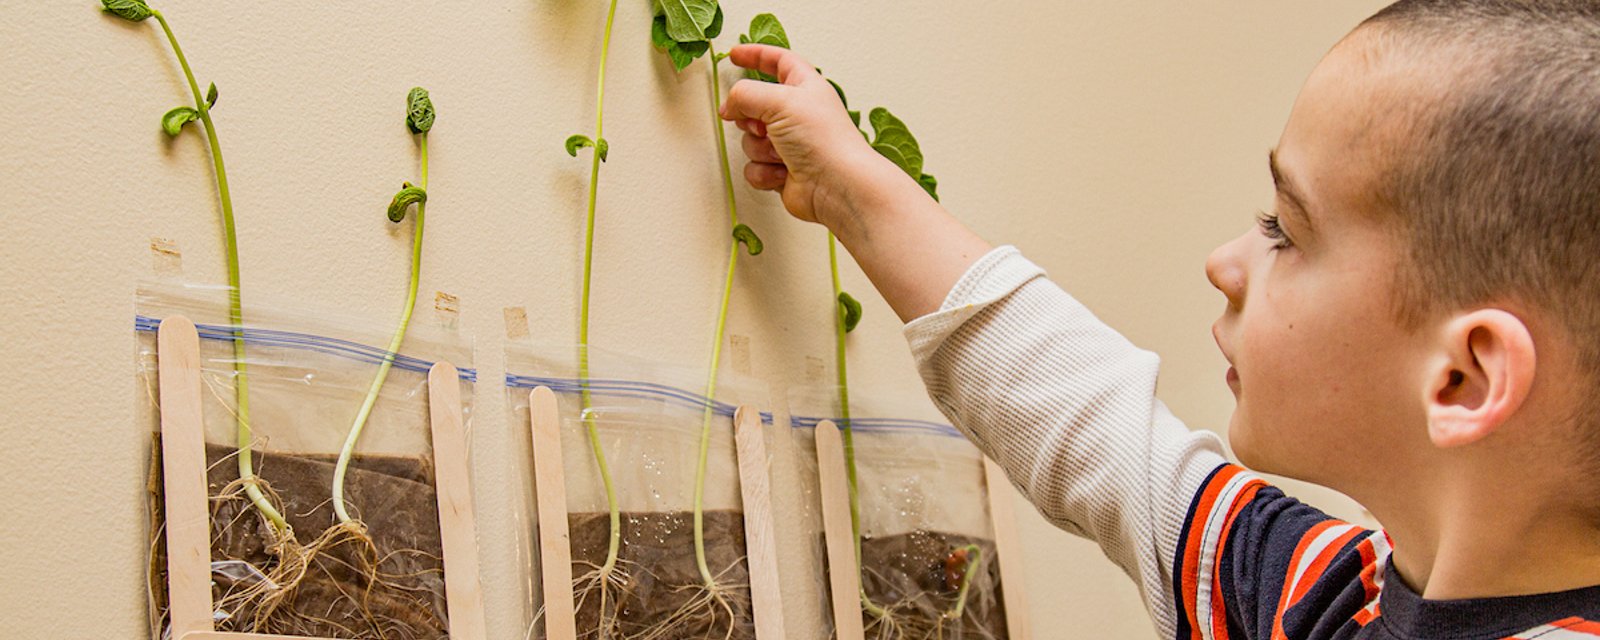 Une expérience à proposer à vos enfants: la germination de haricot dans un sac transparent